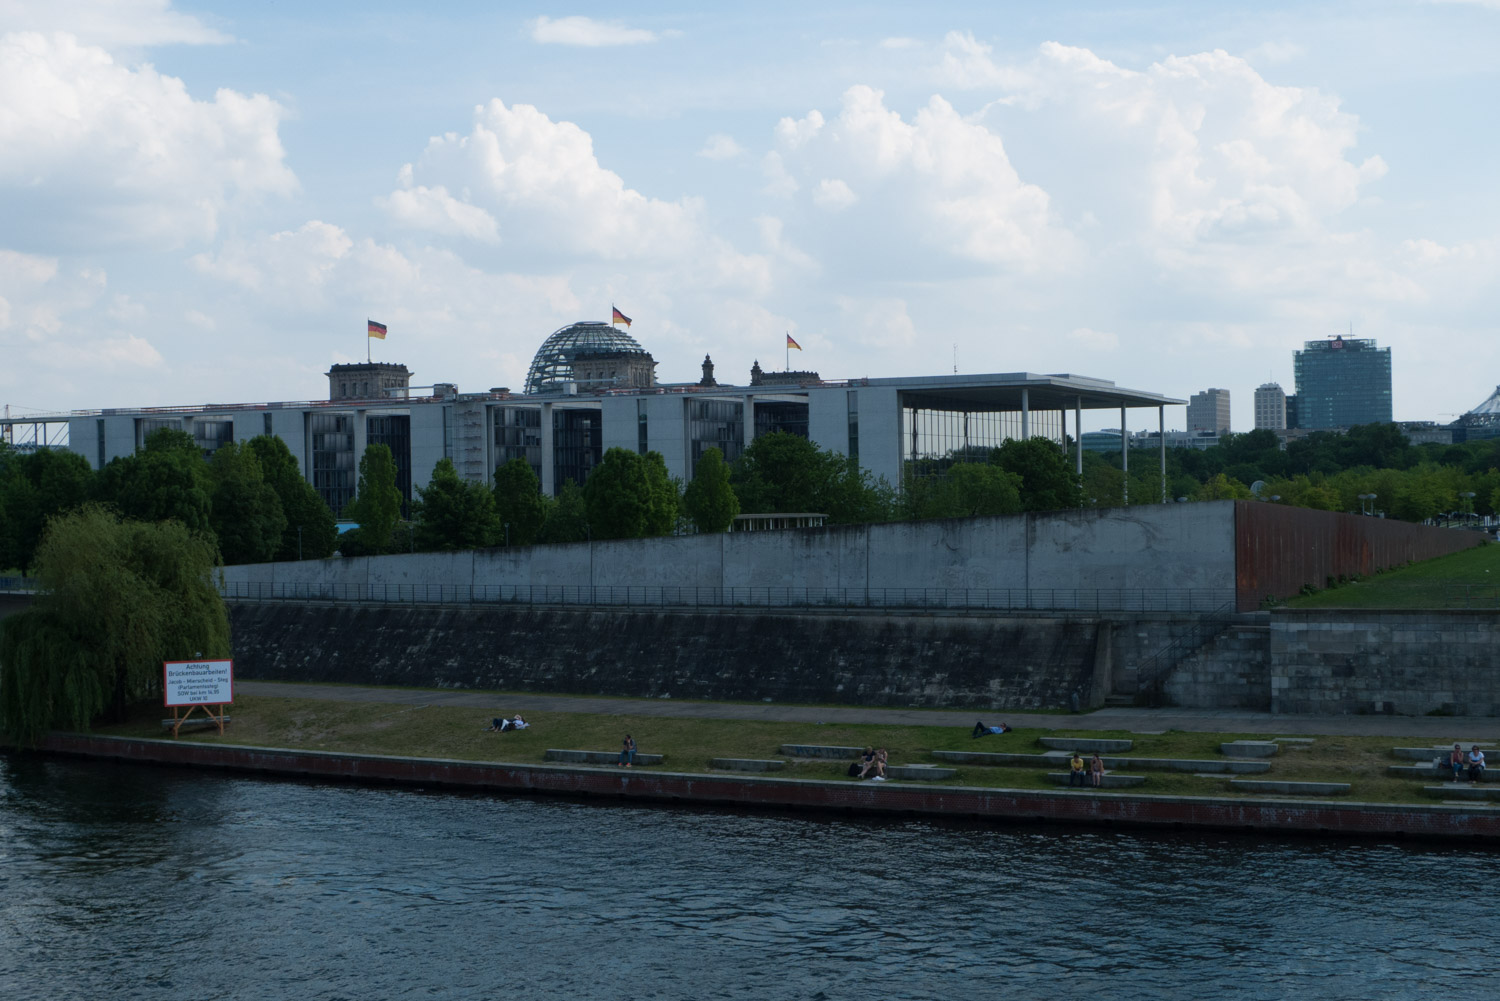 5. Reichstag